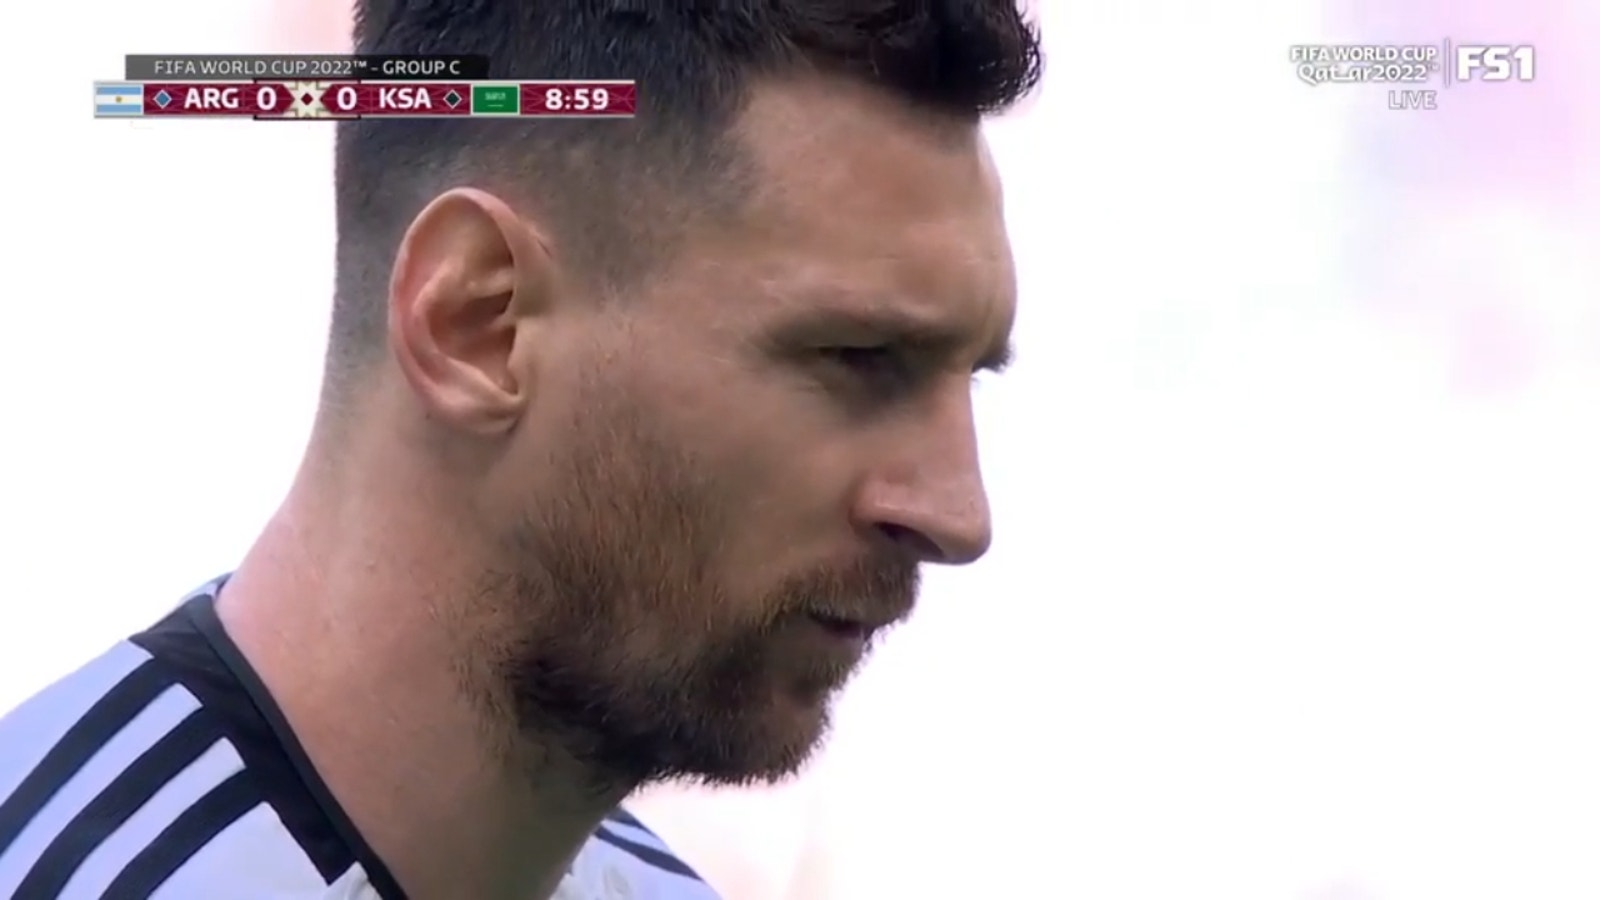 लियोनेल मेसी ने 10वें मिनट में पेनल्टी पर गोल कर अर्जेंटीना को सऊदी अरब पर 1-0 की बढ़त दिला दी।